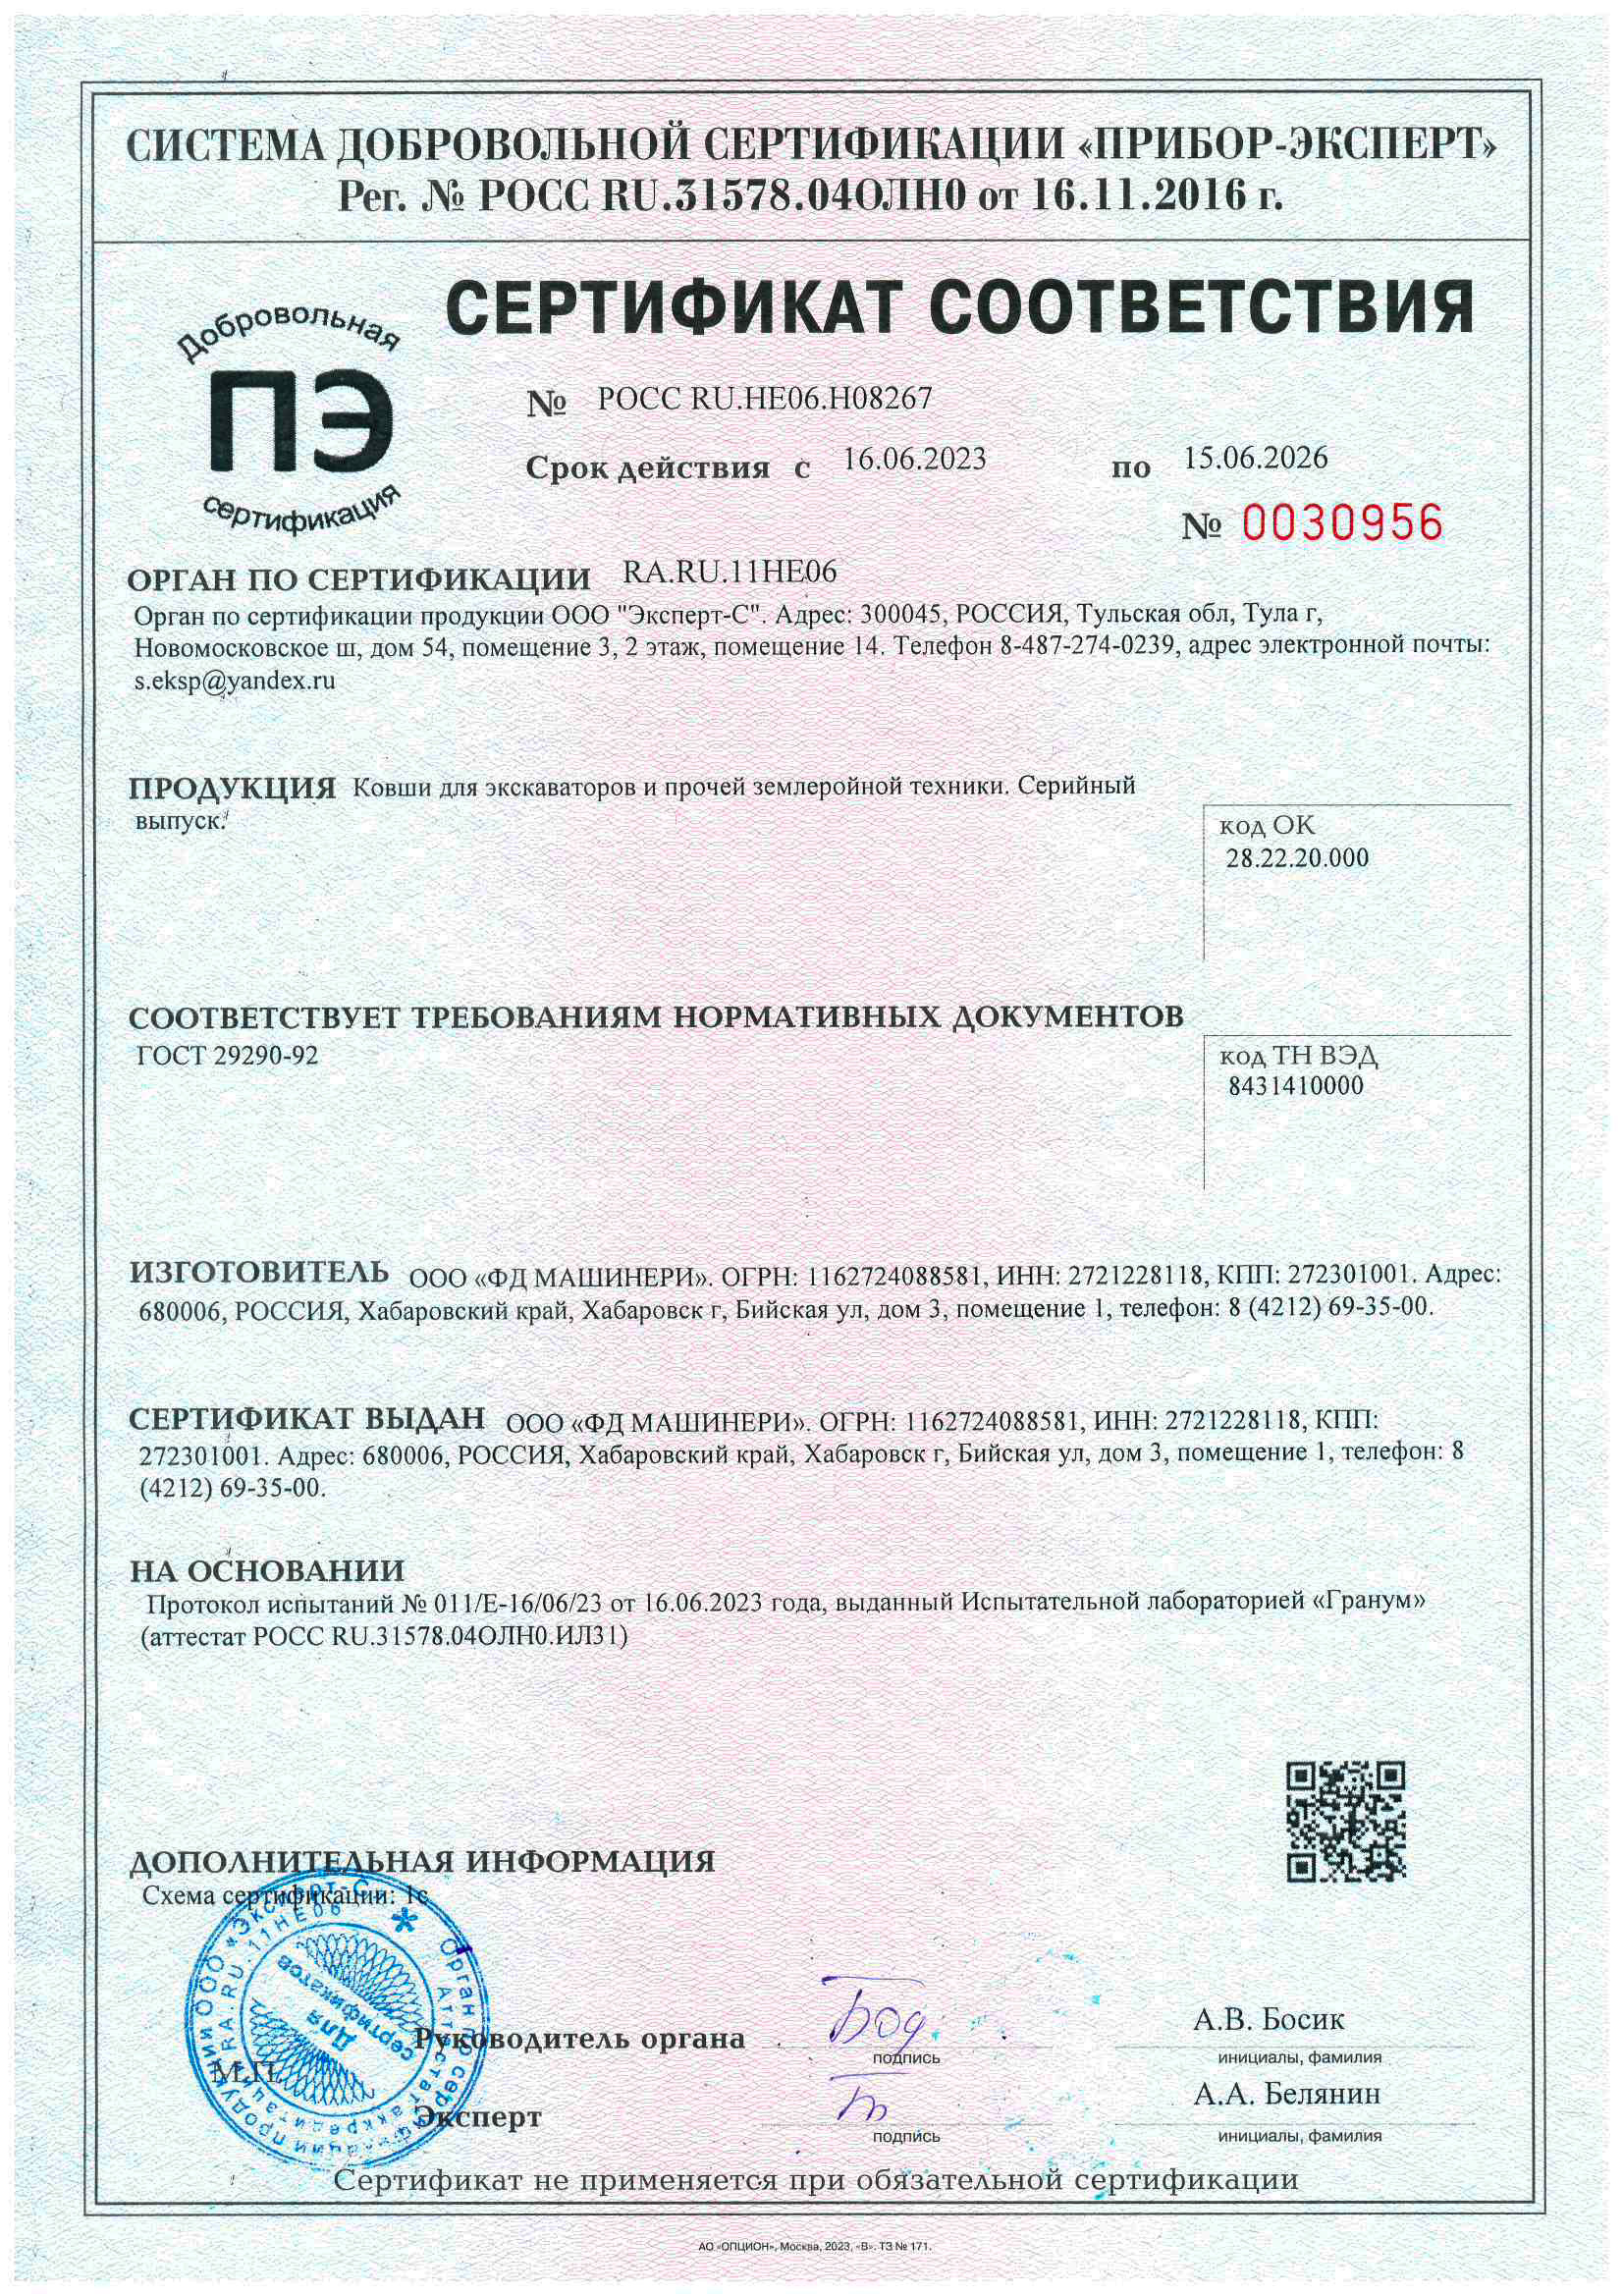 Сертификат соответствия "Производство ковшей для экскаваторов и прочей землеройной техники"